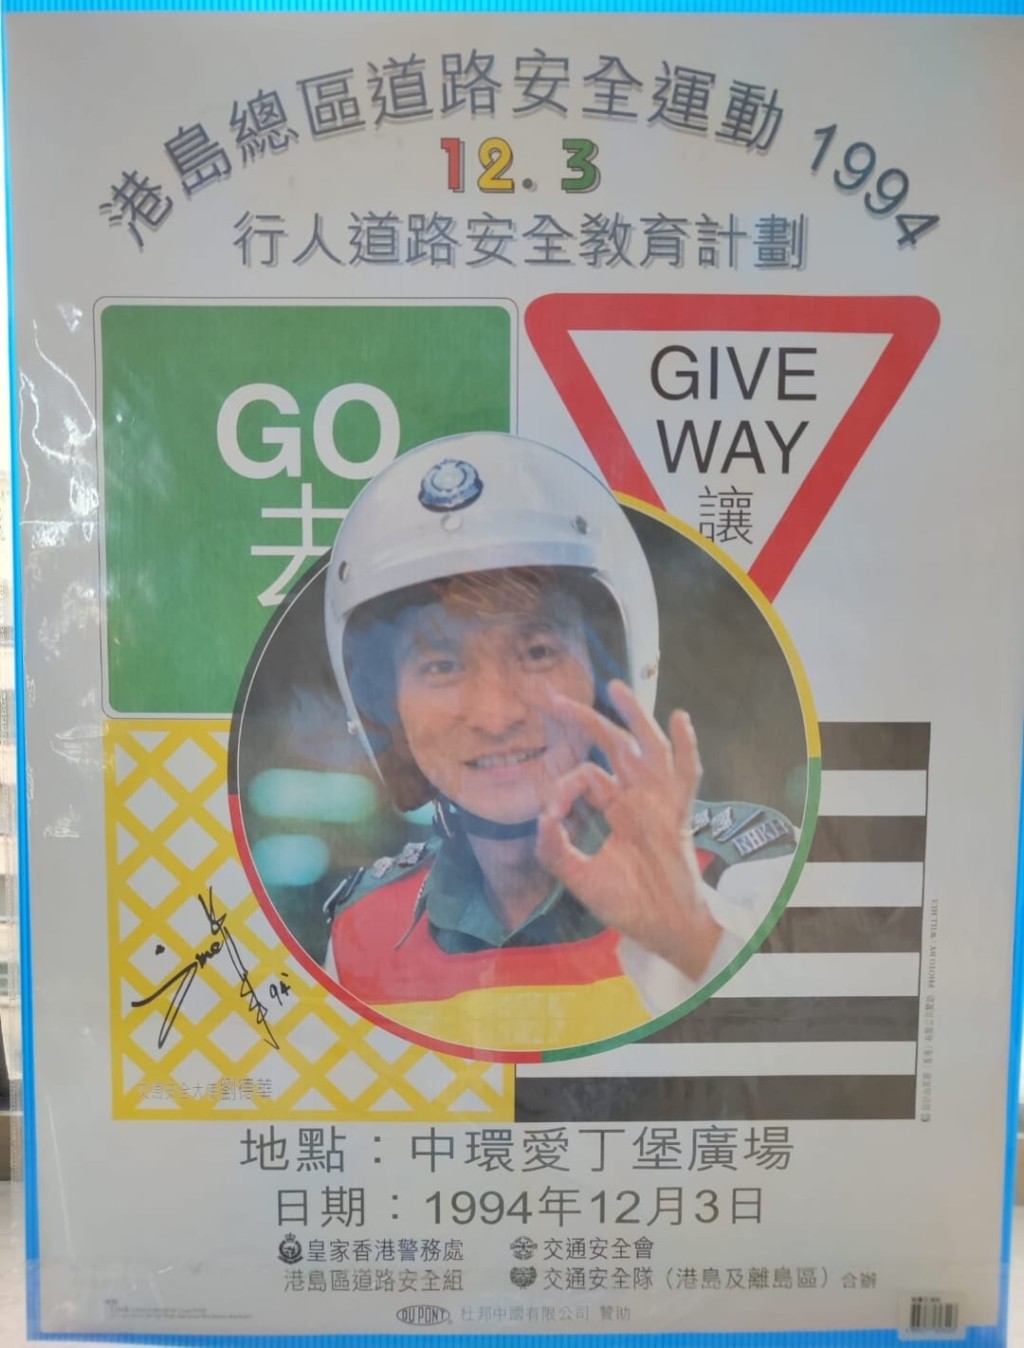 天王刘德华于1994年曾担任港岛总区宣传道路安全运动大使。